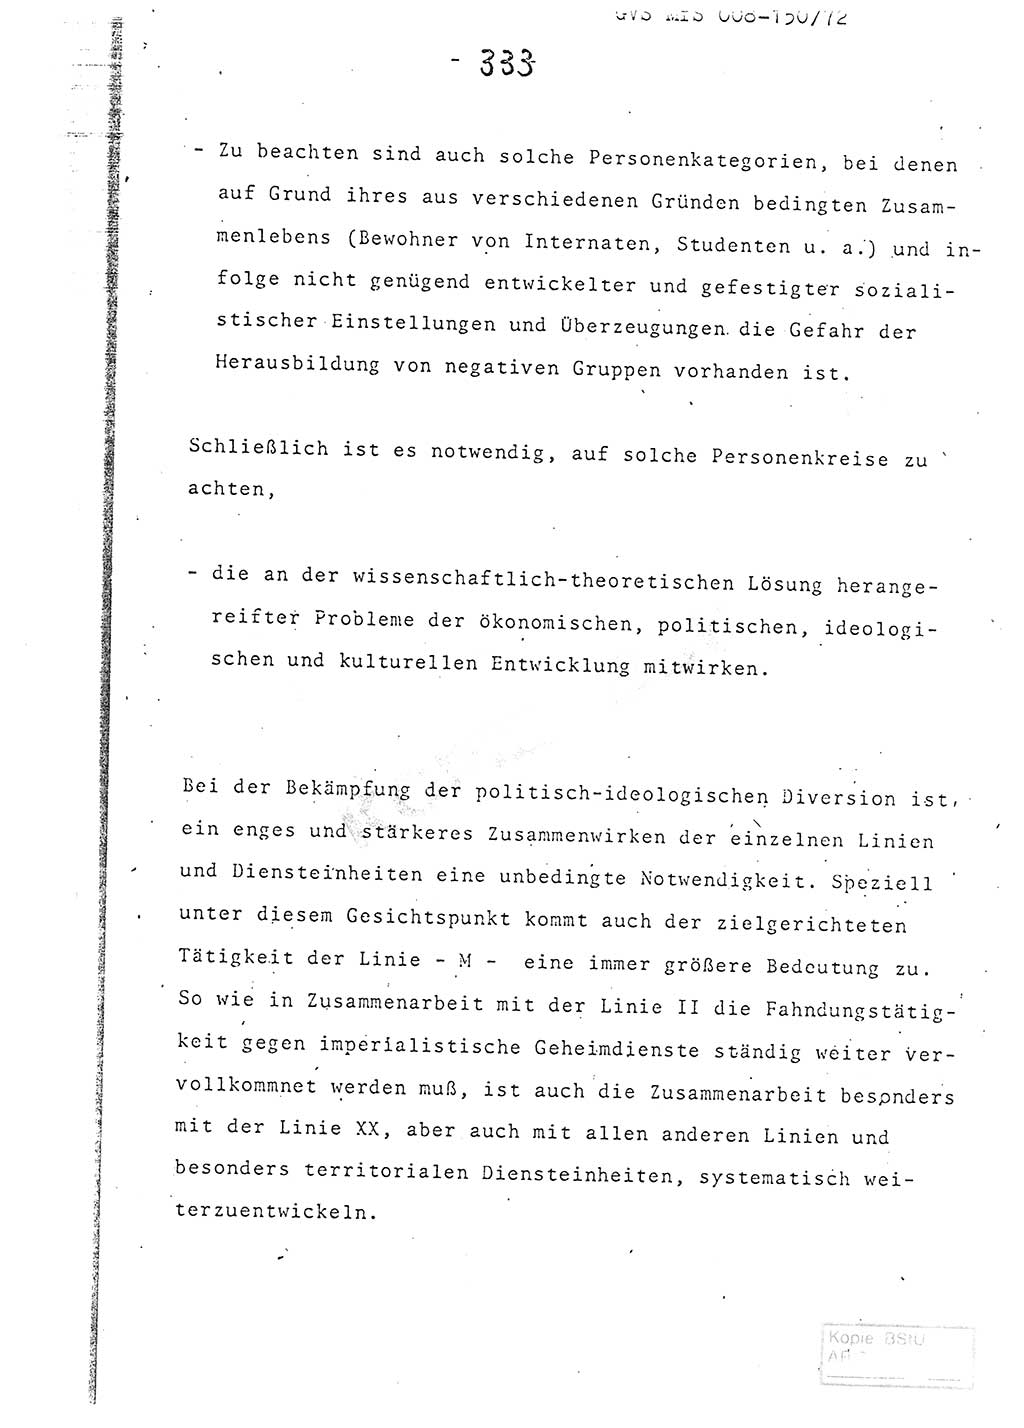 Referat (Entwurf) des Genossen Minister (Generaloberst Erich Mielke) auf der Dienstkonferenz 1972, Ministerium für Staatssicherheit (MfS) [Deutsche Demokratische Republik (DDR)], Der Minister, Geheime Verschlußsache (GVS) 008-150/72, Berlin 25.2.1972, Seite 333 (Ref. Entw. DK MfS DDR Min. GVS 008-150/72 1972, S. 333)